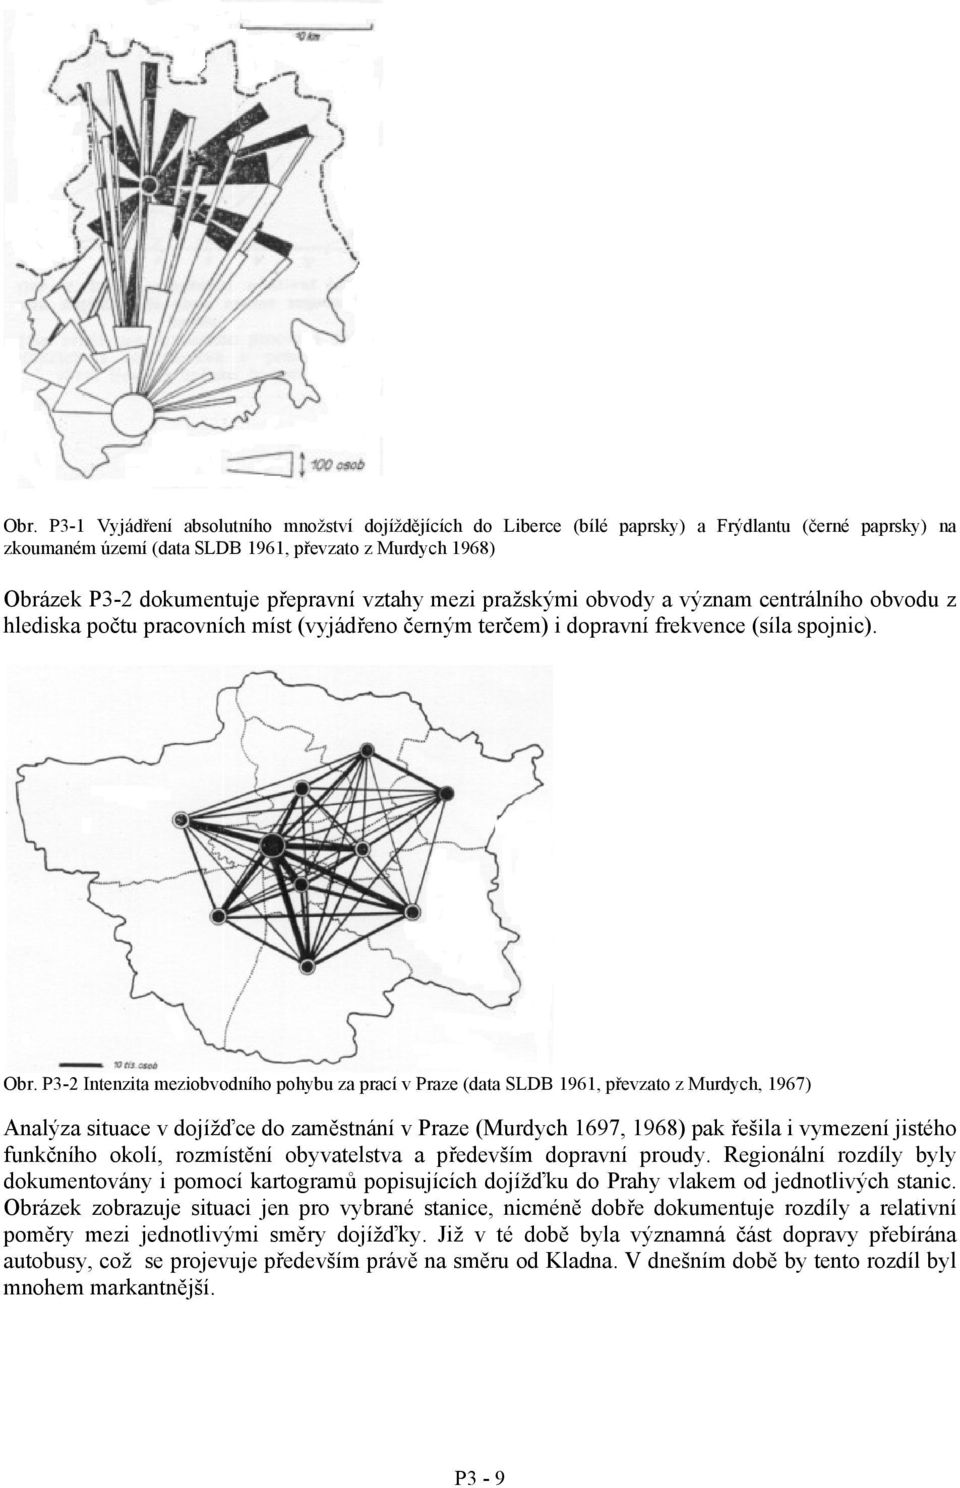 P3-2 Intenzita meziobvodního pohybu za prací v Praze (data SLDB 1961, převzato z Murdych, 1967) Analýza situace v dojížďce do zaměstnání v Praze (Murdych 1697, 1968) pak řešila i vymezení jistého